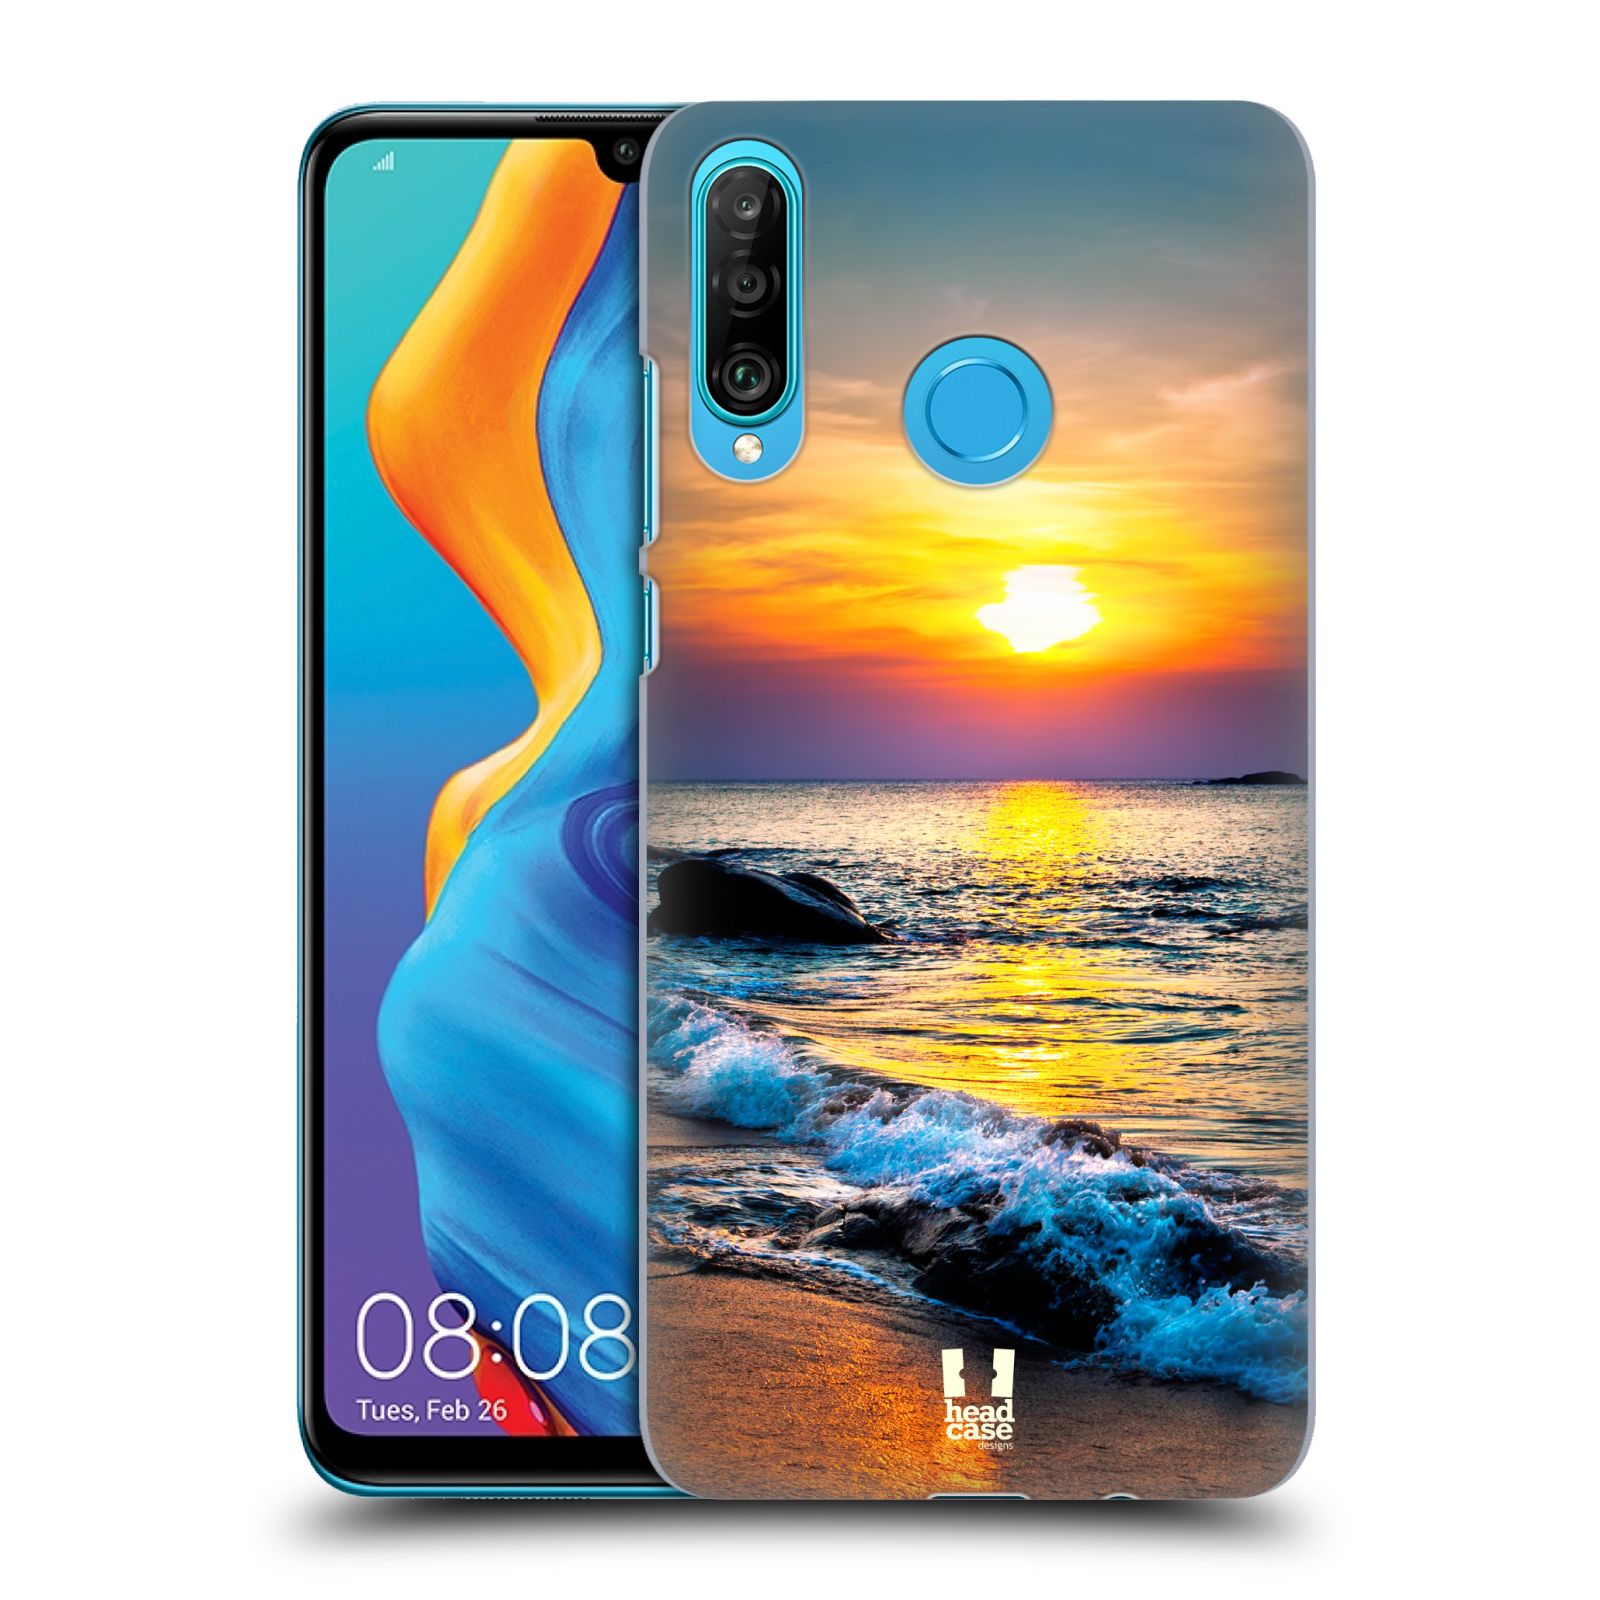 Pouzdro na mobil Huawei P30 LITE - HEAD CASE - vzor Pláže a Moře barevný západ slunce